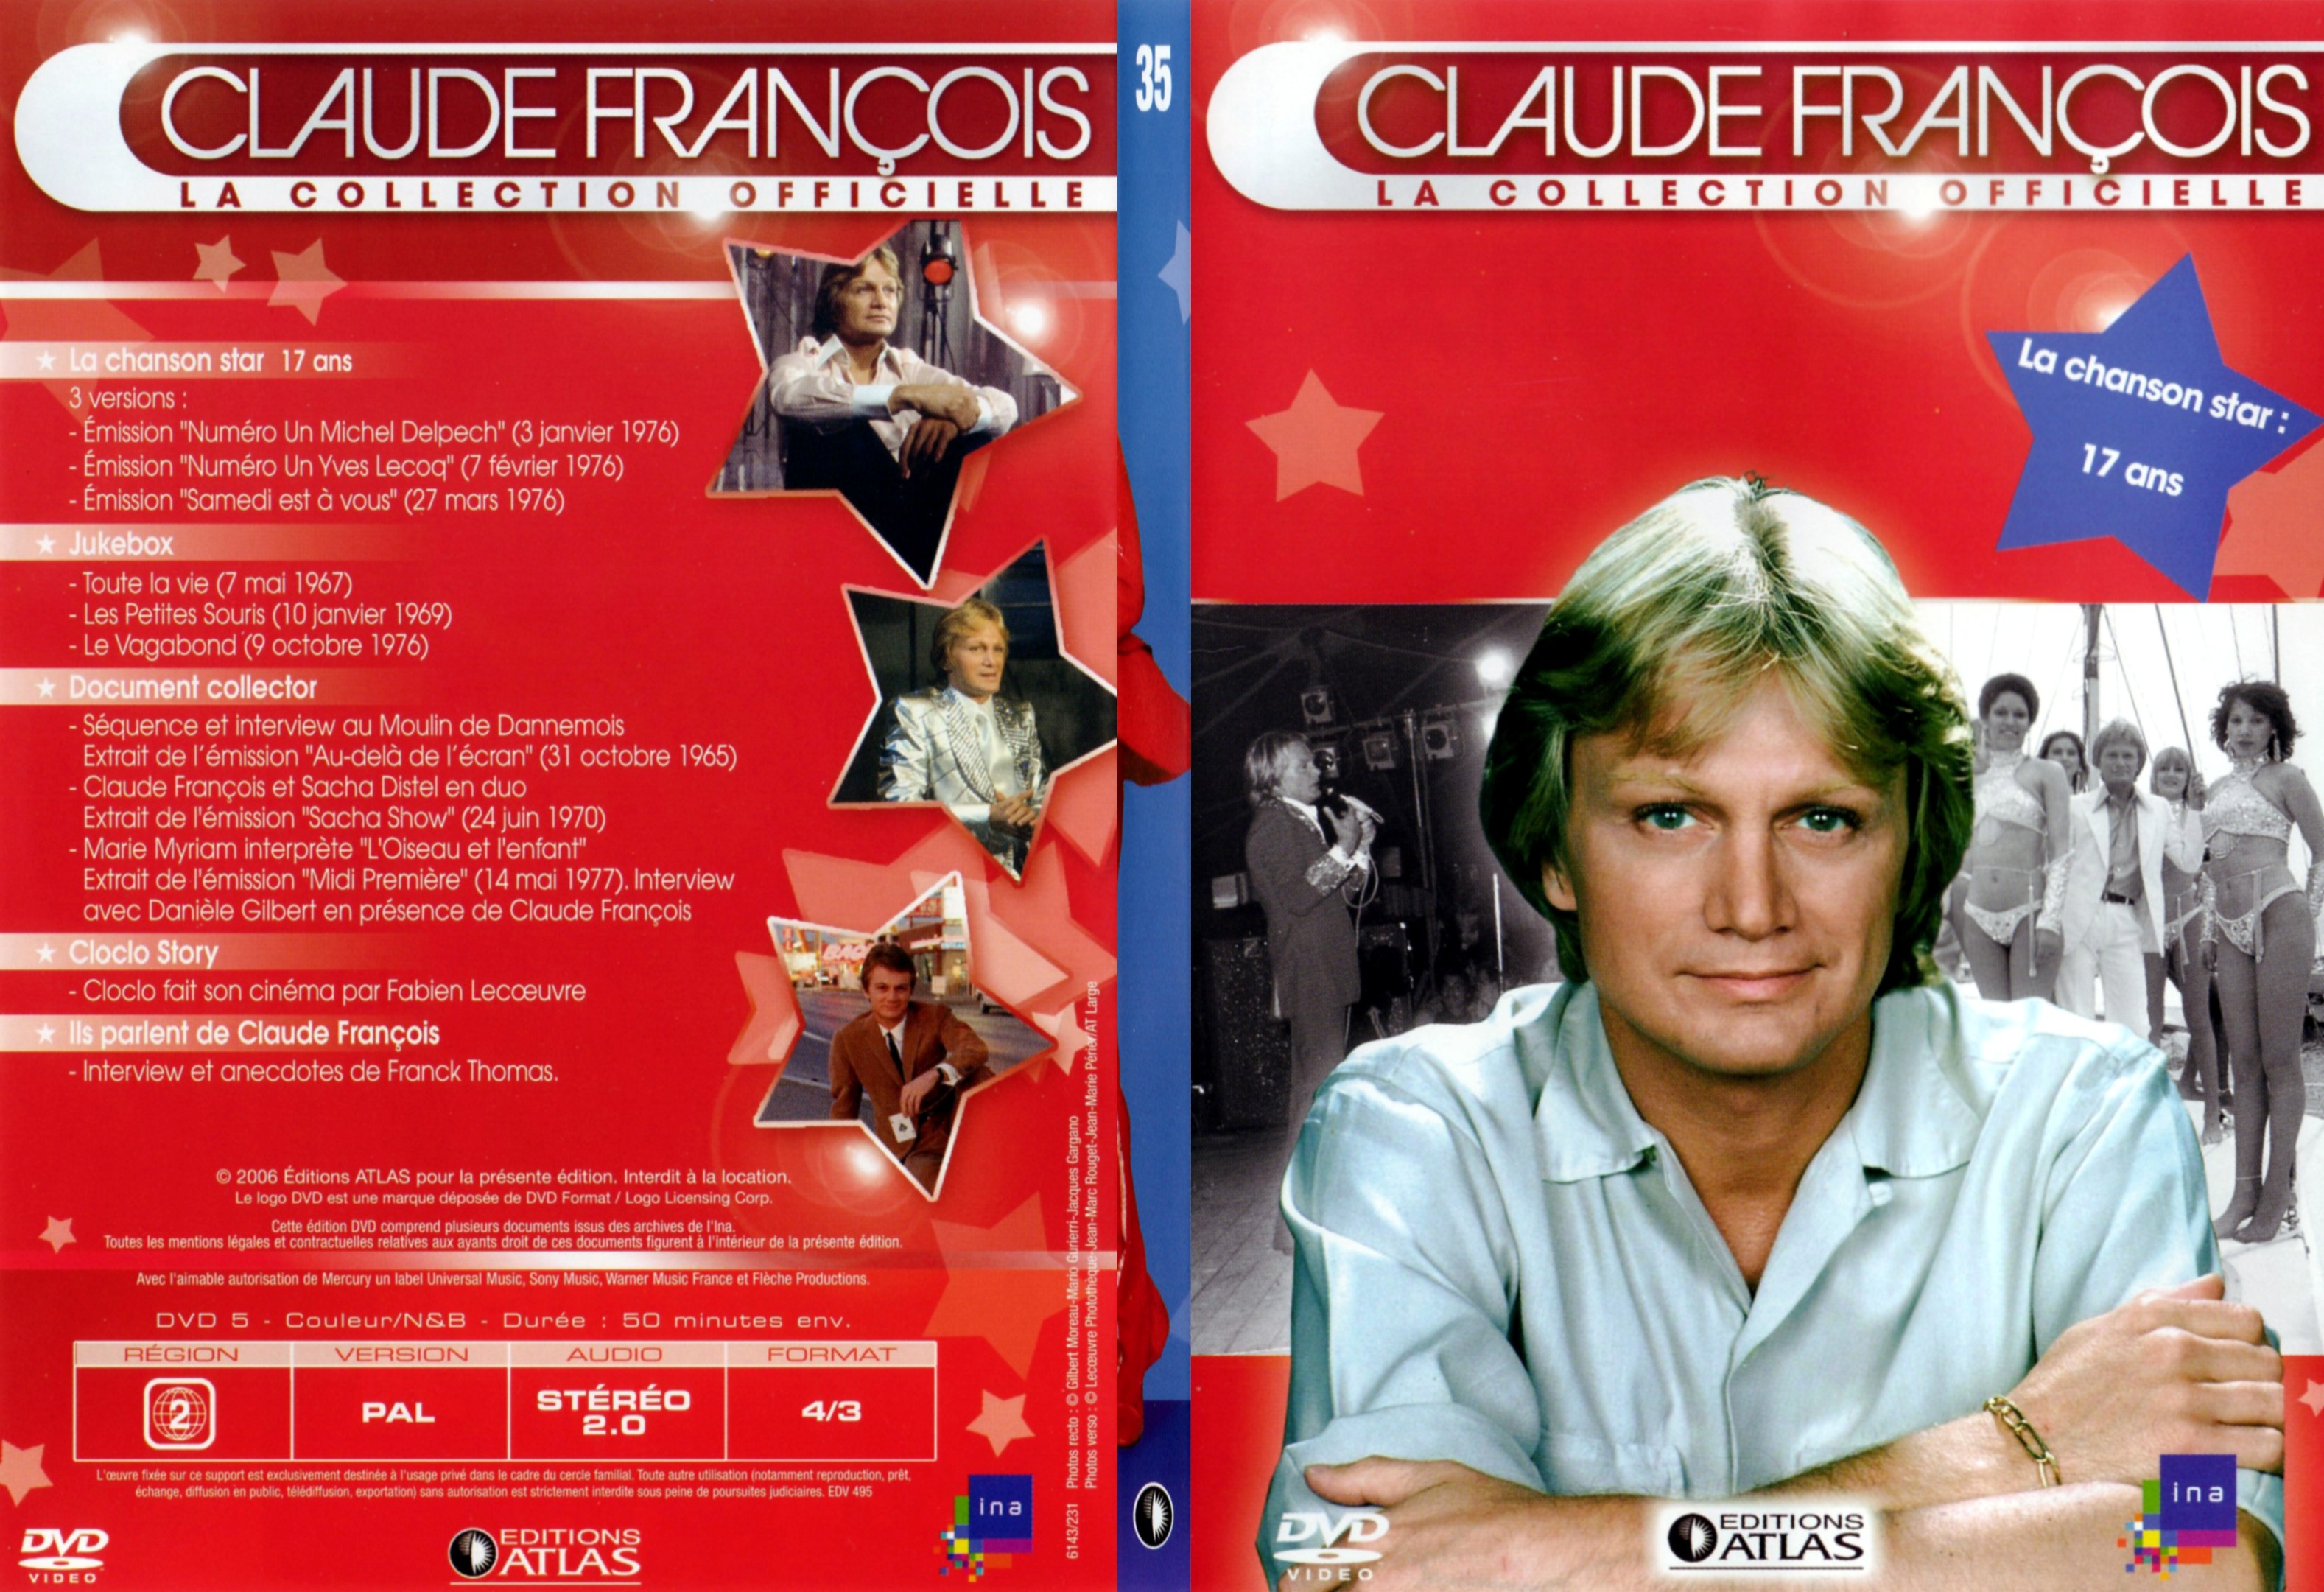 Jaquette DVD Claude francois le collection officielle vol 35 - SLIM